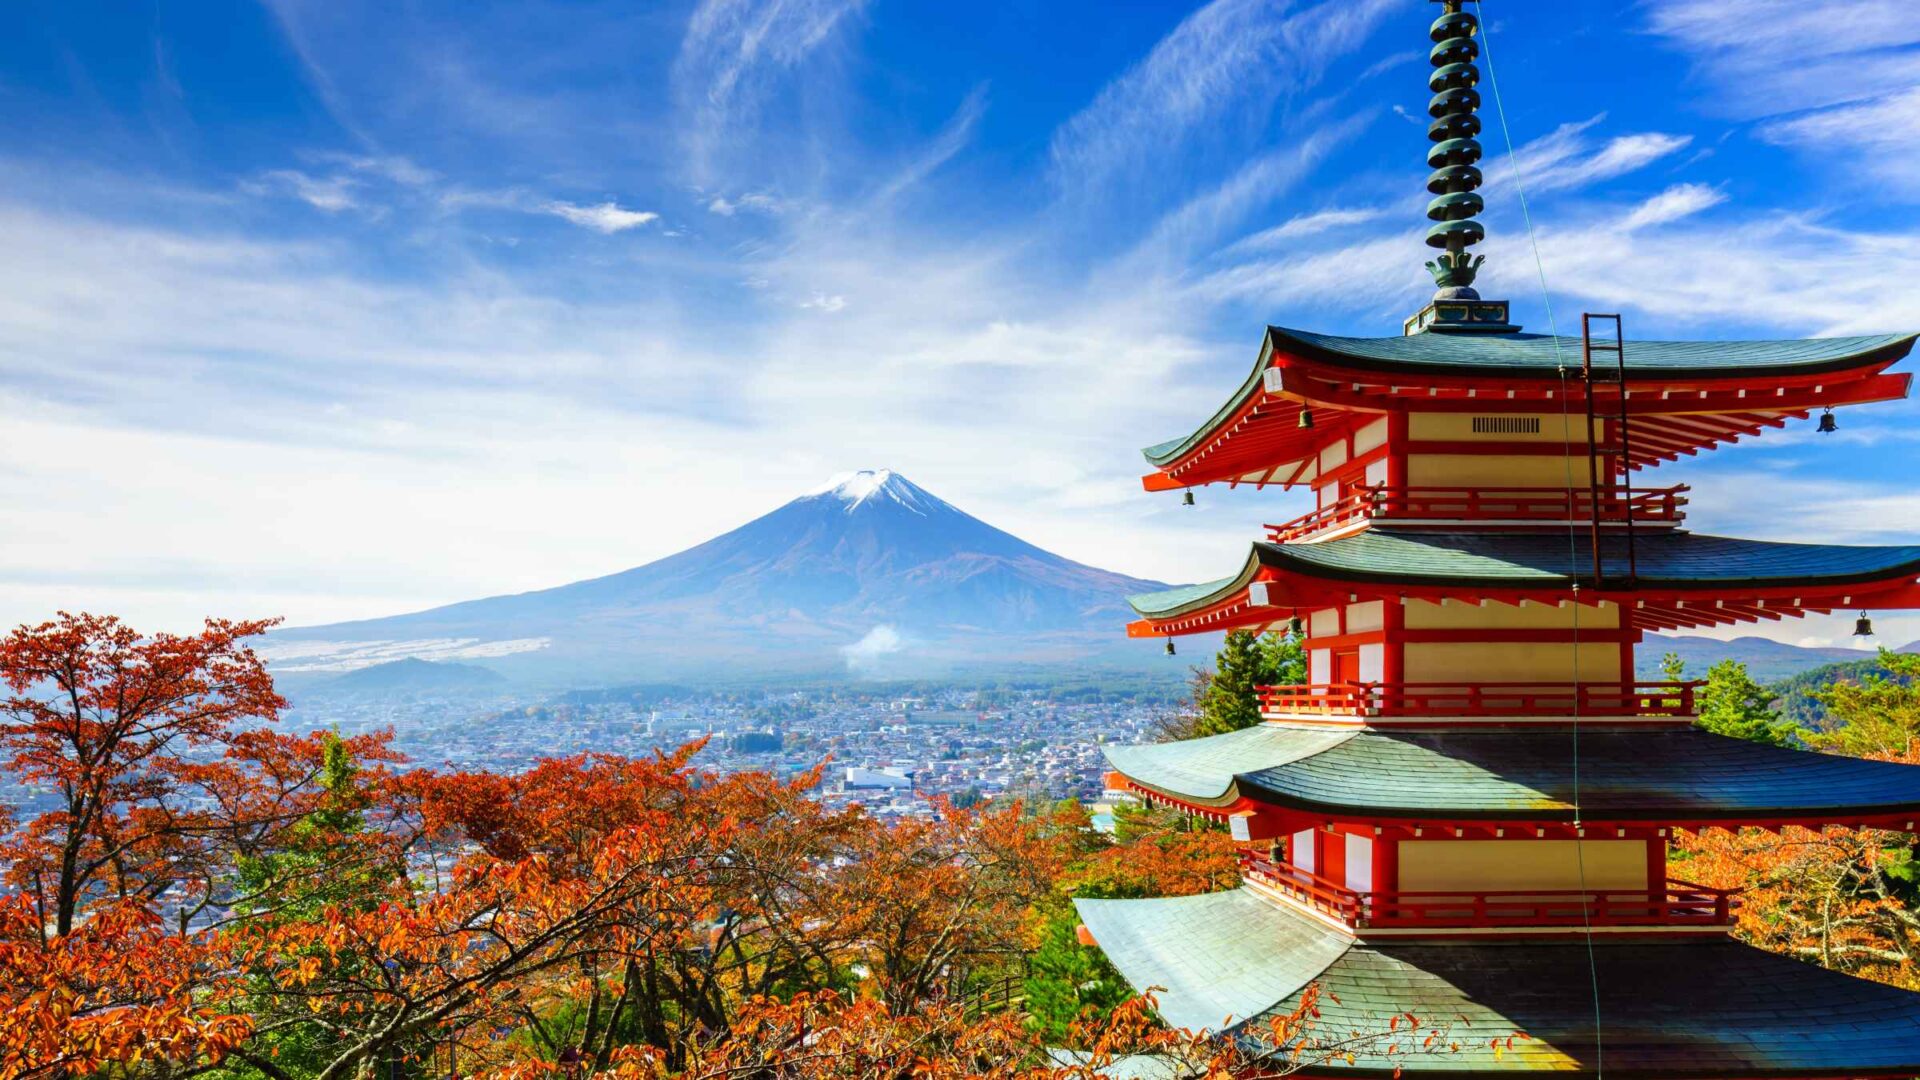 Turismo in Giappone: tra menù in inglese e lamentele sui social, un dilemma irrisolto